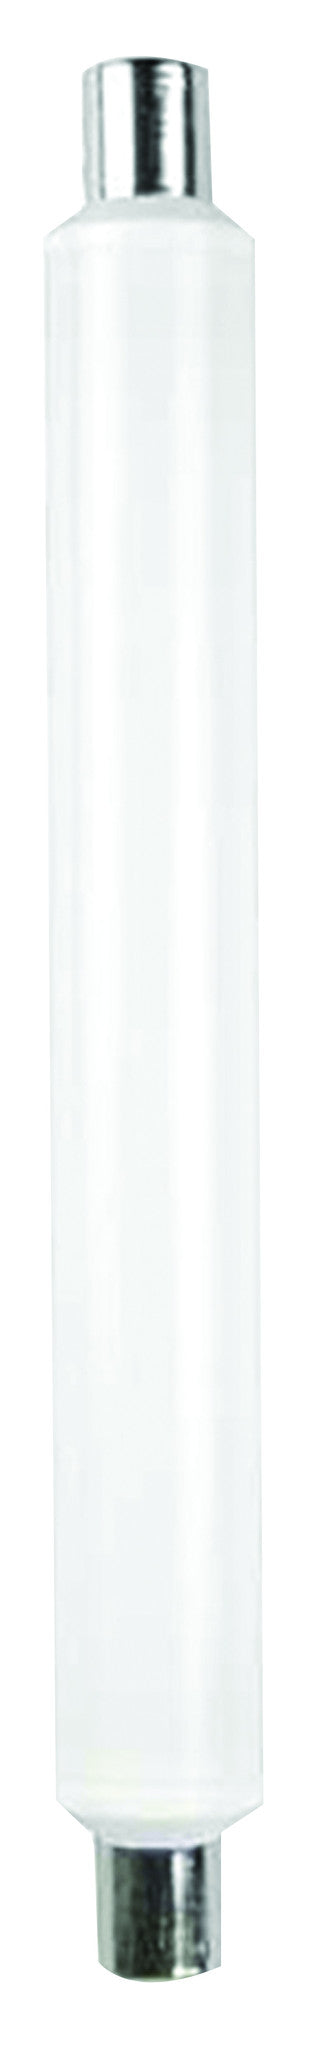 Tube Linolite LED S19 309mm 12W 2700K 1000Lm - 997108 - SLL12-310-82